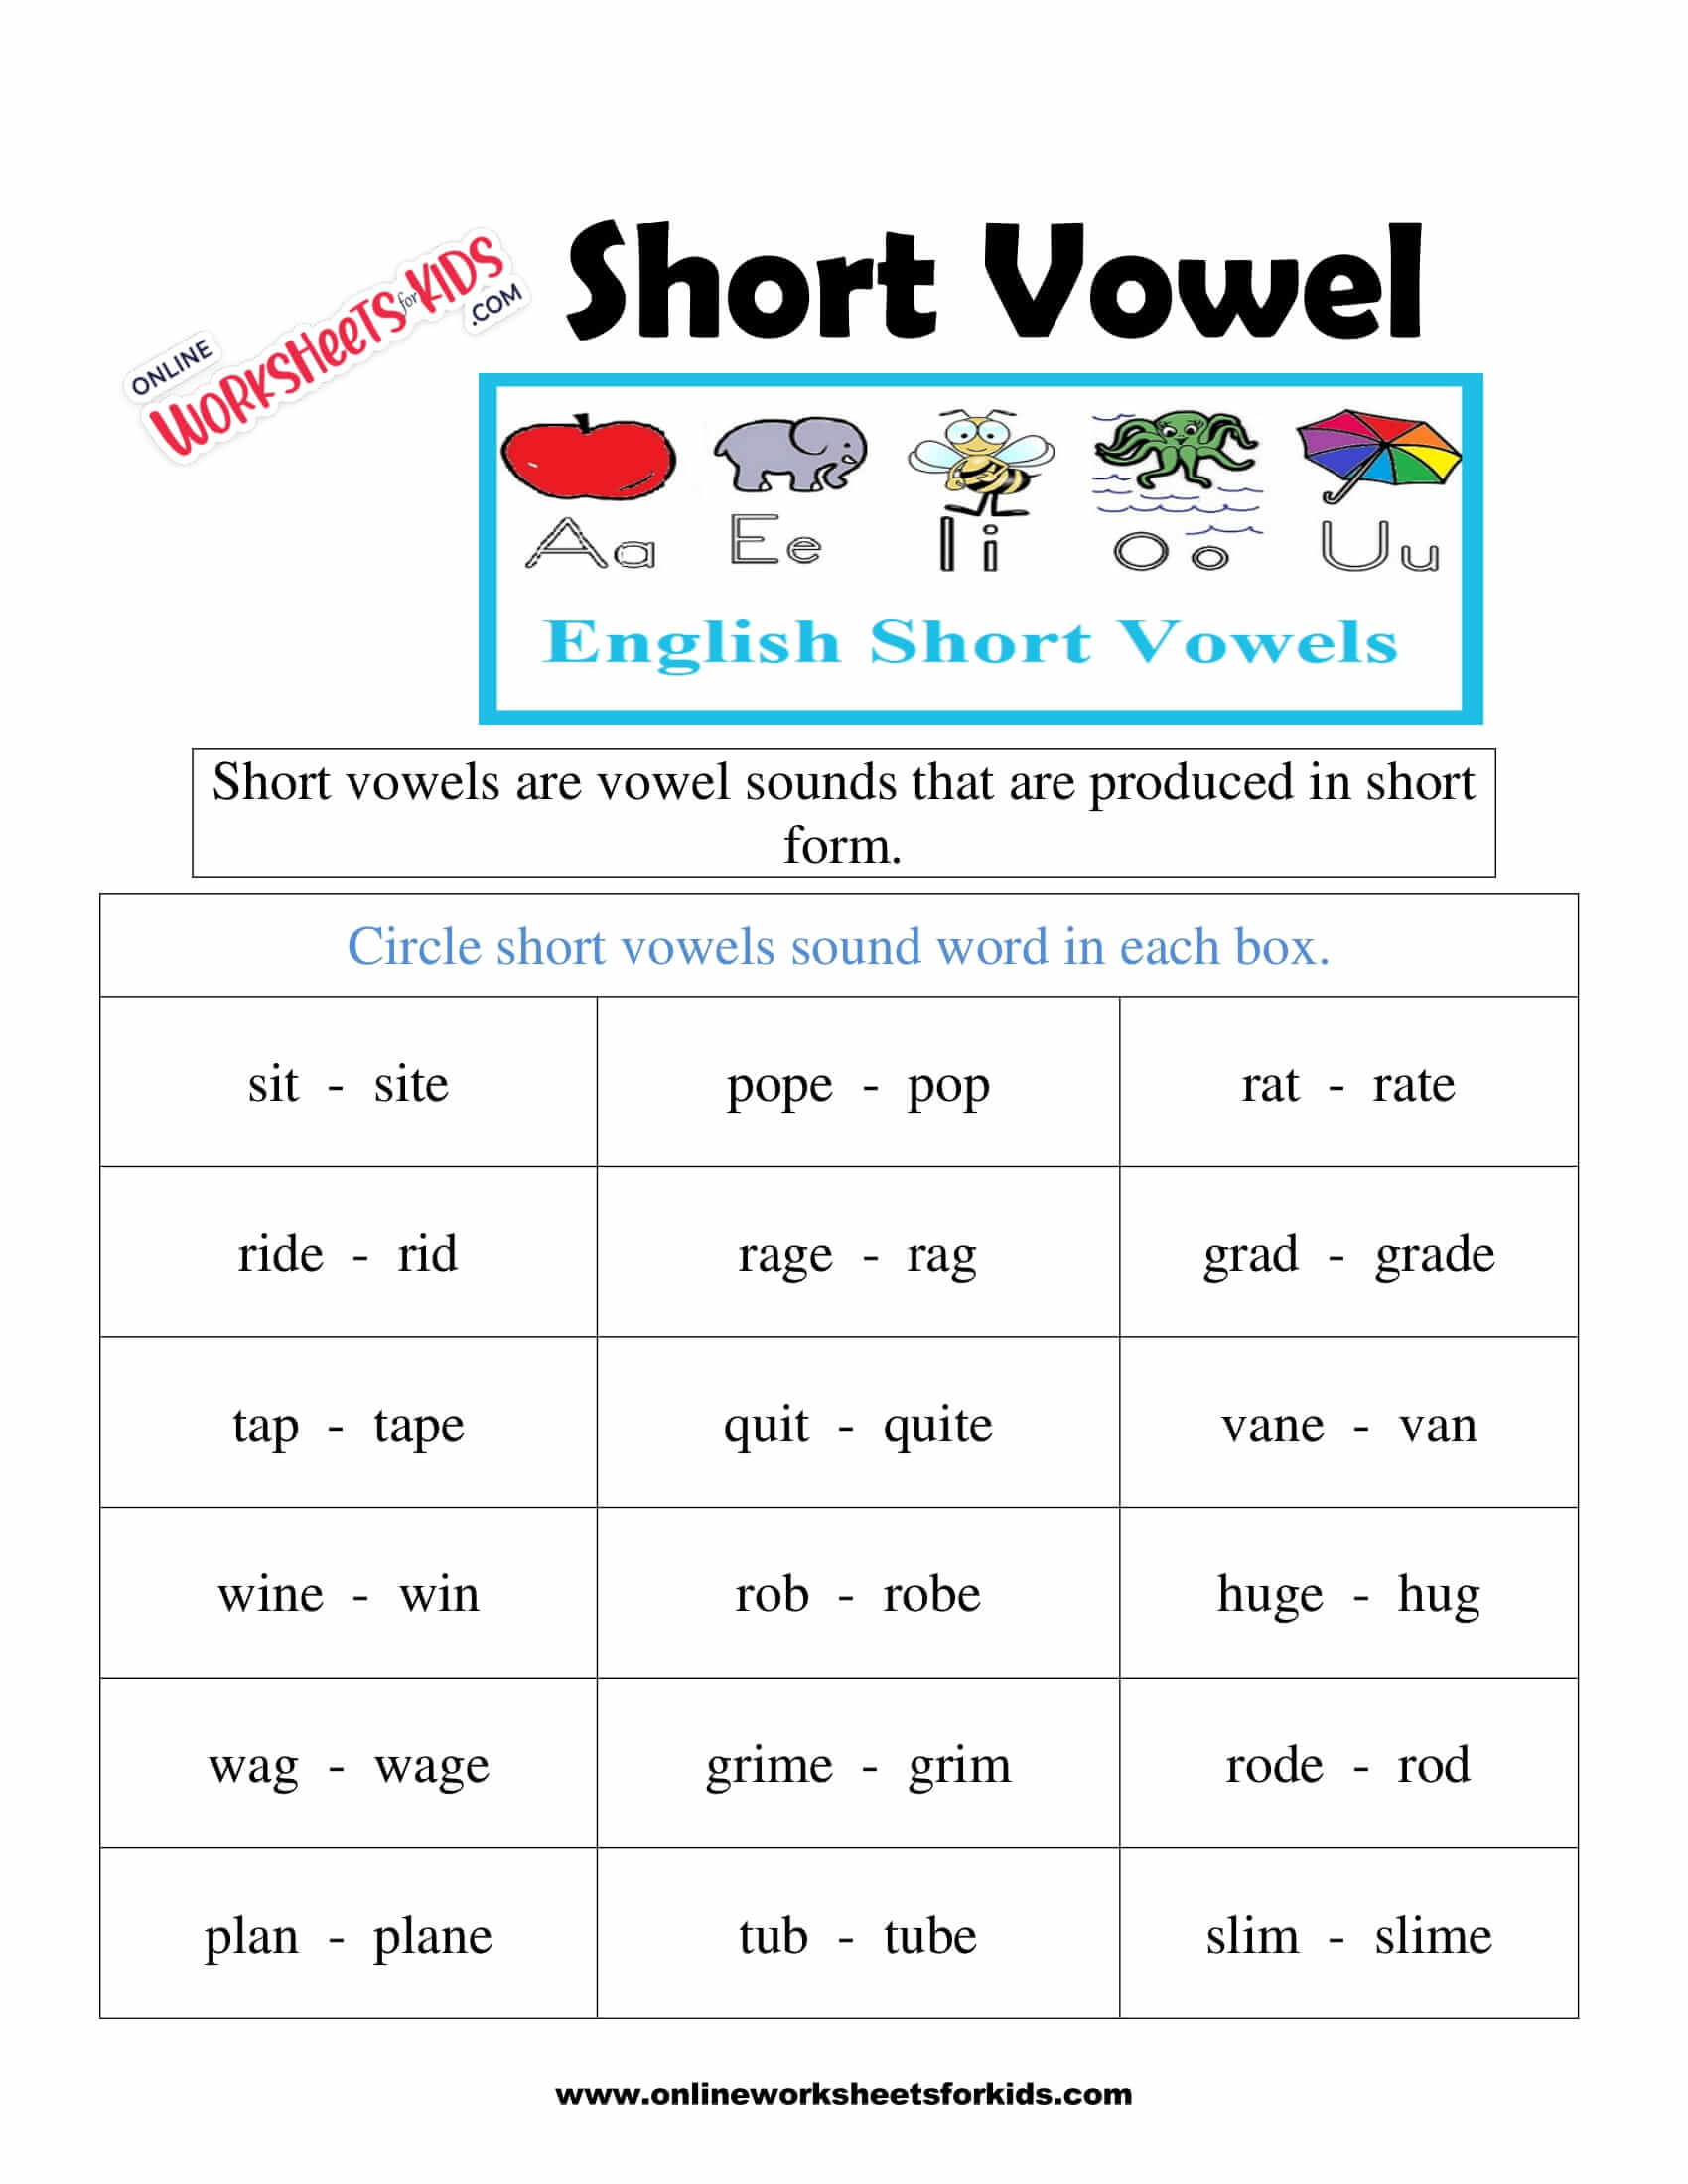 short-vowel-sounds-worksheets-2nd-grade-best-games-walkthrough